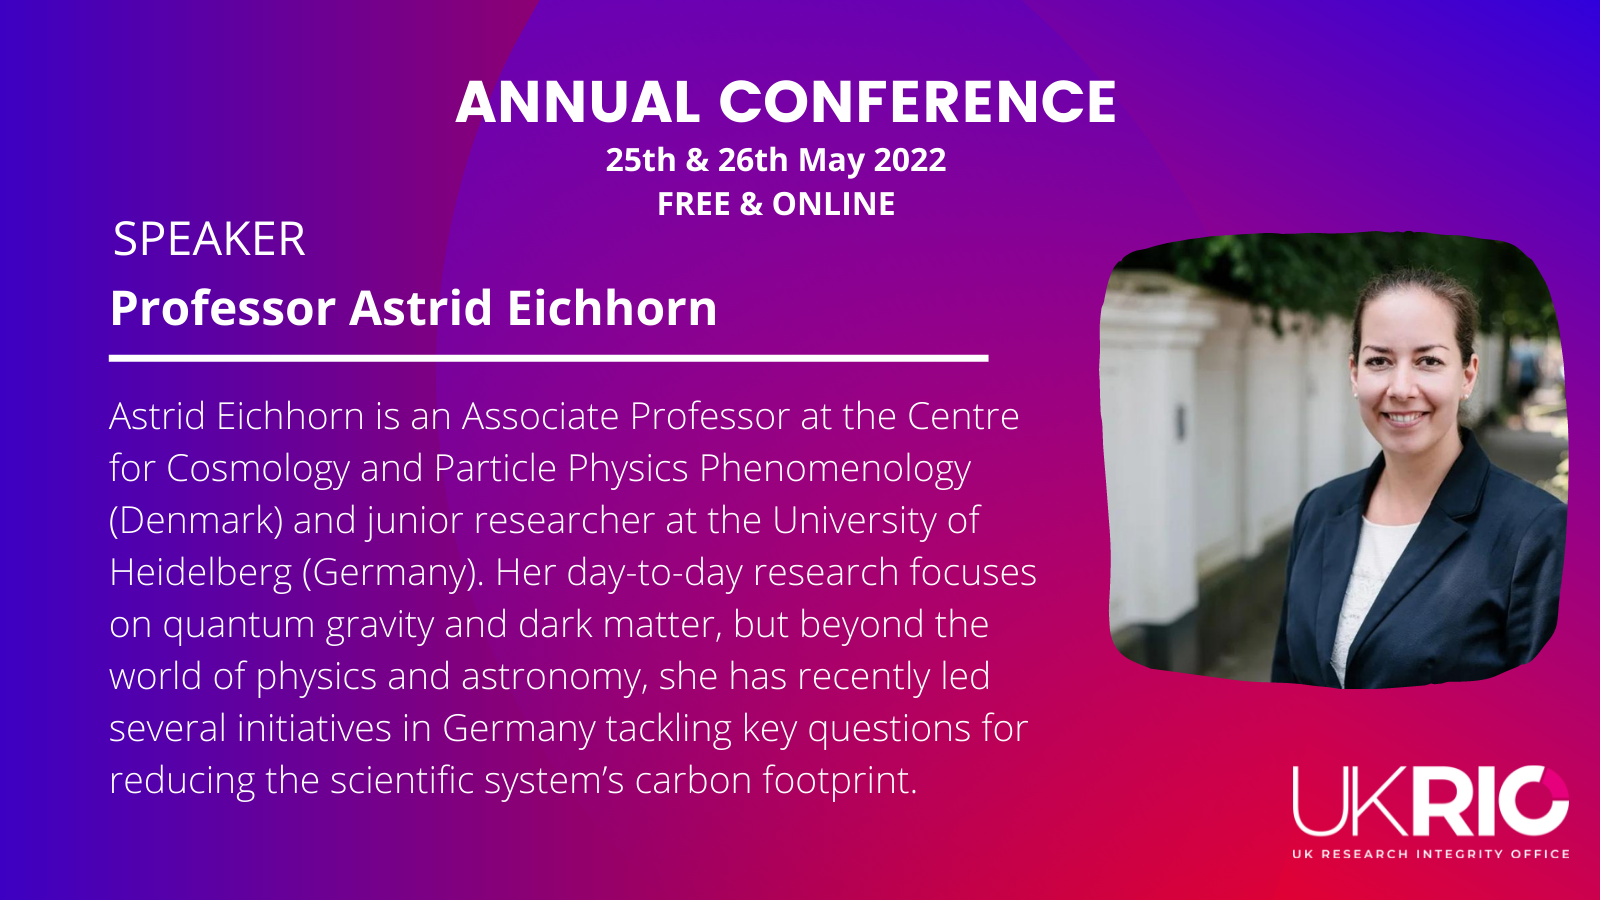 Prof. Astrid Eichhorn starts Day 1 as Keynote Speaker #UKRIO2022